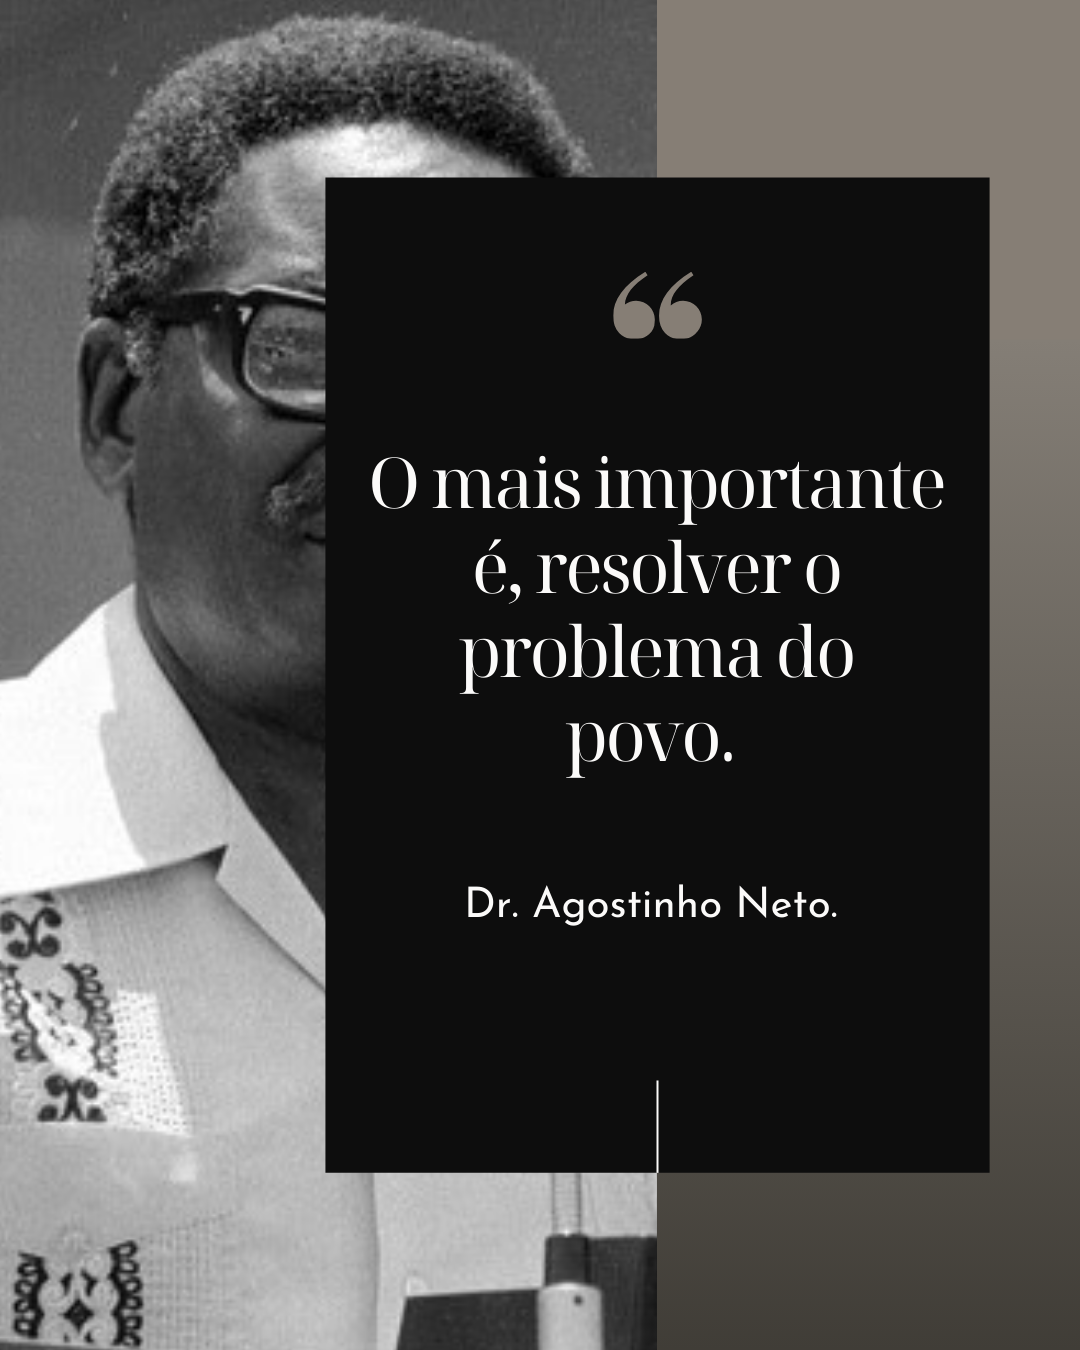 Imagem com frase do Dr. Agostinho Neto o mais importante